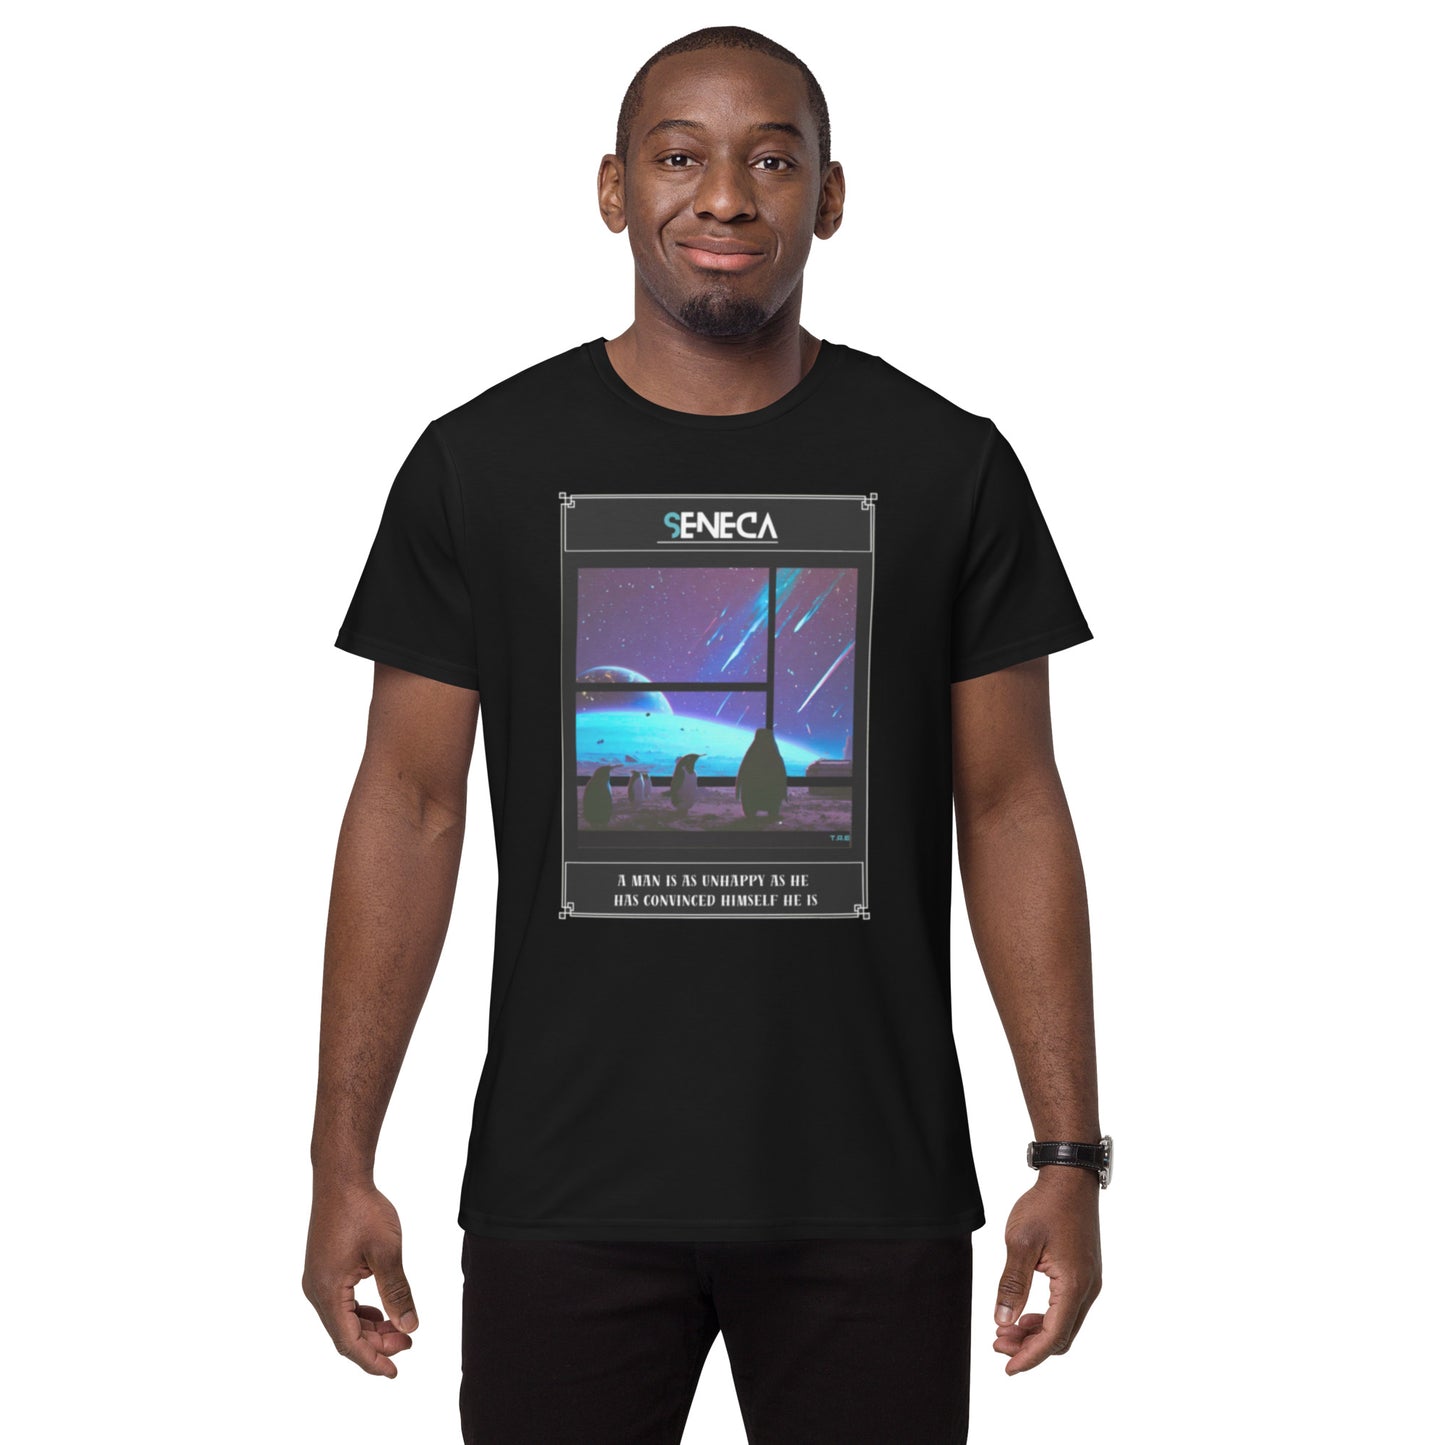 Men's Premium T-Shirt - Seneca